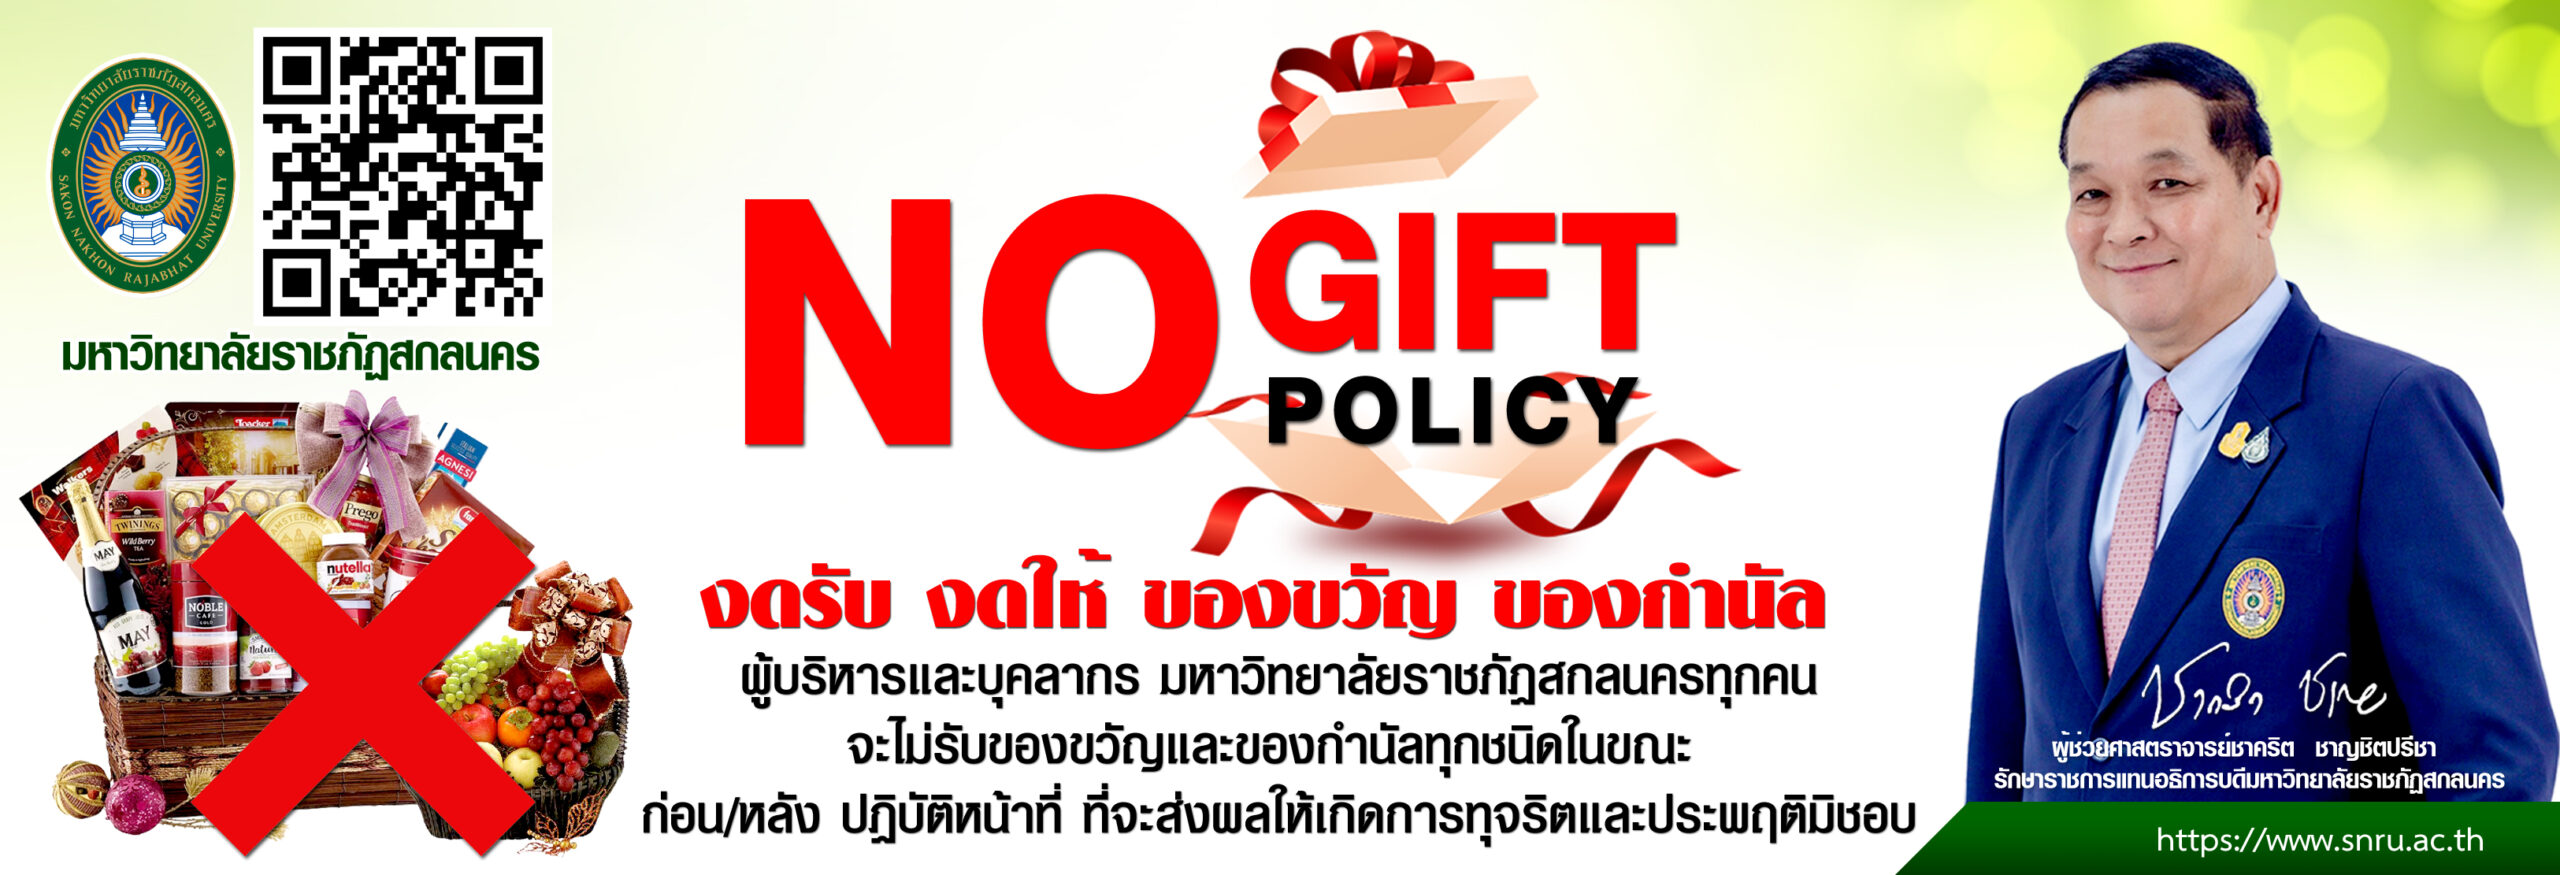 ประกาศมหาวิทยาลัยราชภัฏสกลนคร เรื่อง นโยบายไม่รับของขวัญและของกำนัลทุกชนิดจากการปฏิบัติหน้าที่ (No Gift Policy) ประจำปีงบประมาณ พ.ศ. 2567 Sakon Nakhon Rajabhat University Announcement Subject : Policy of Non-Acceptance of Gifts in Connection with Duties (No Gift Policy) Fiscal Year 2024